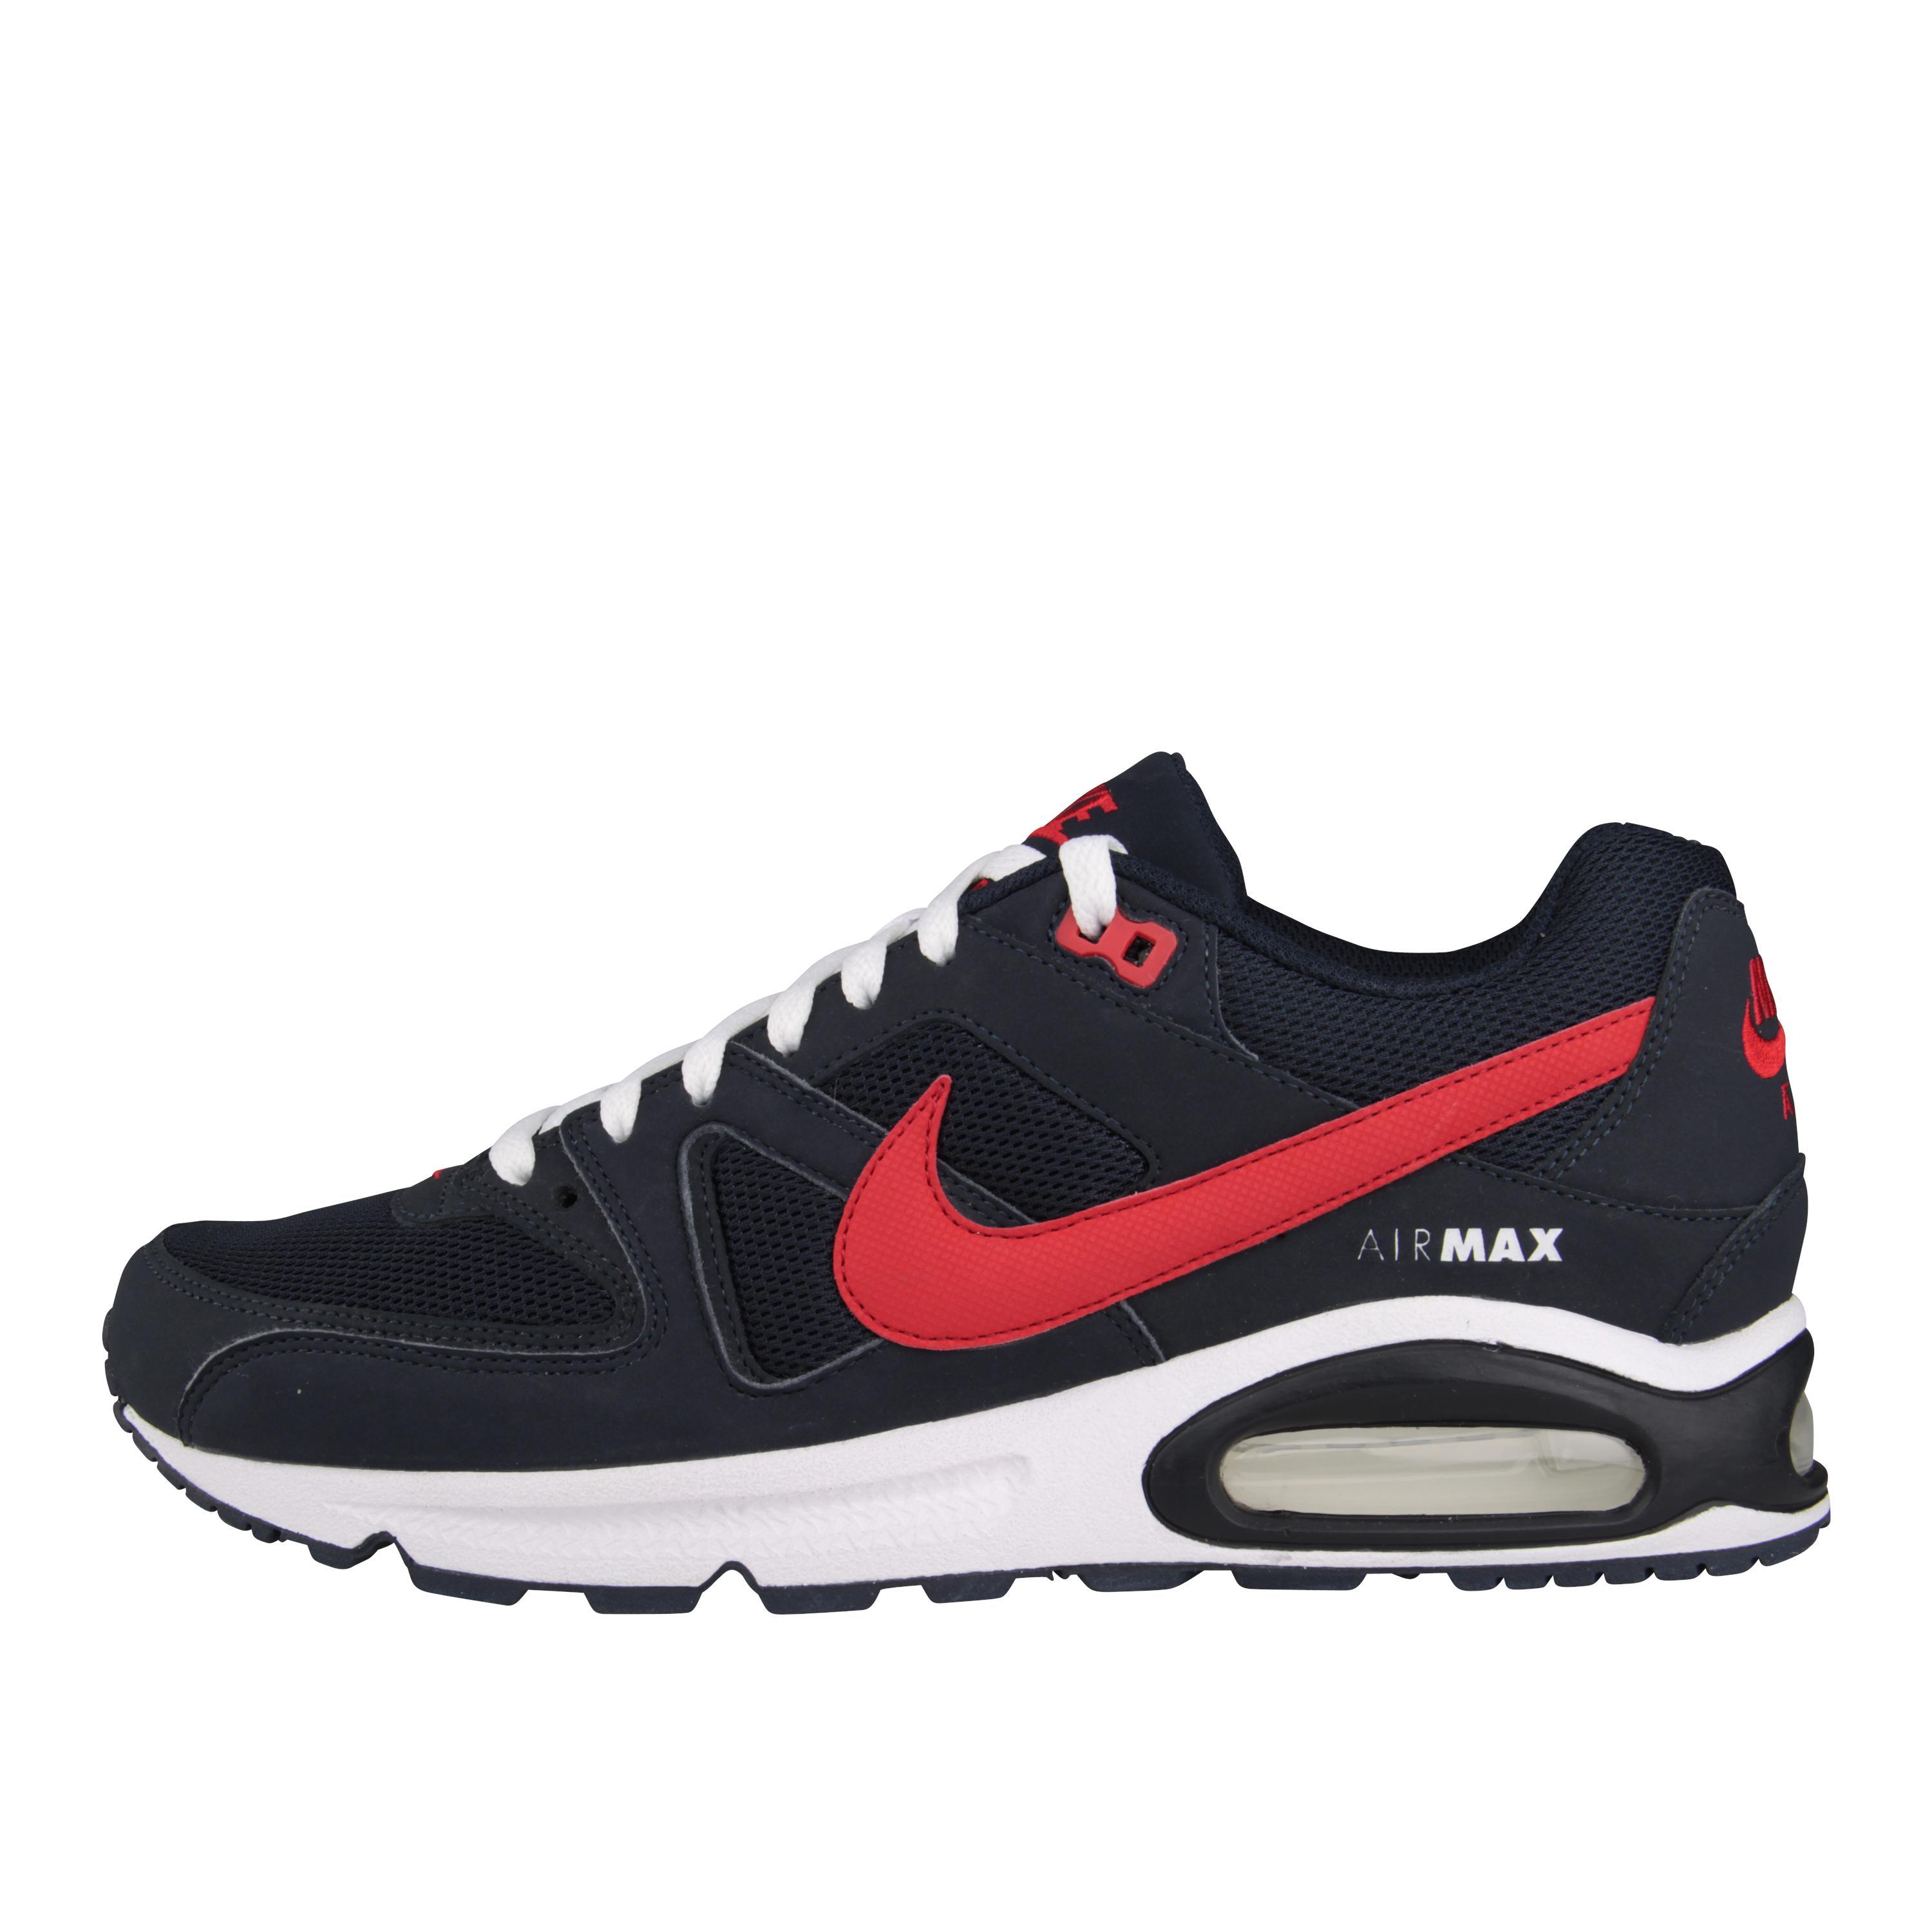 Foto Nike Air Max Command Exclusiva @ Foot Locker foto 421931